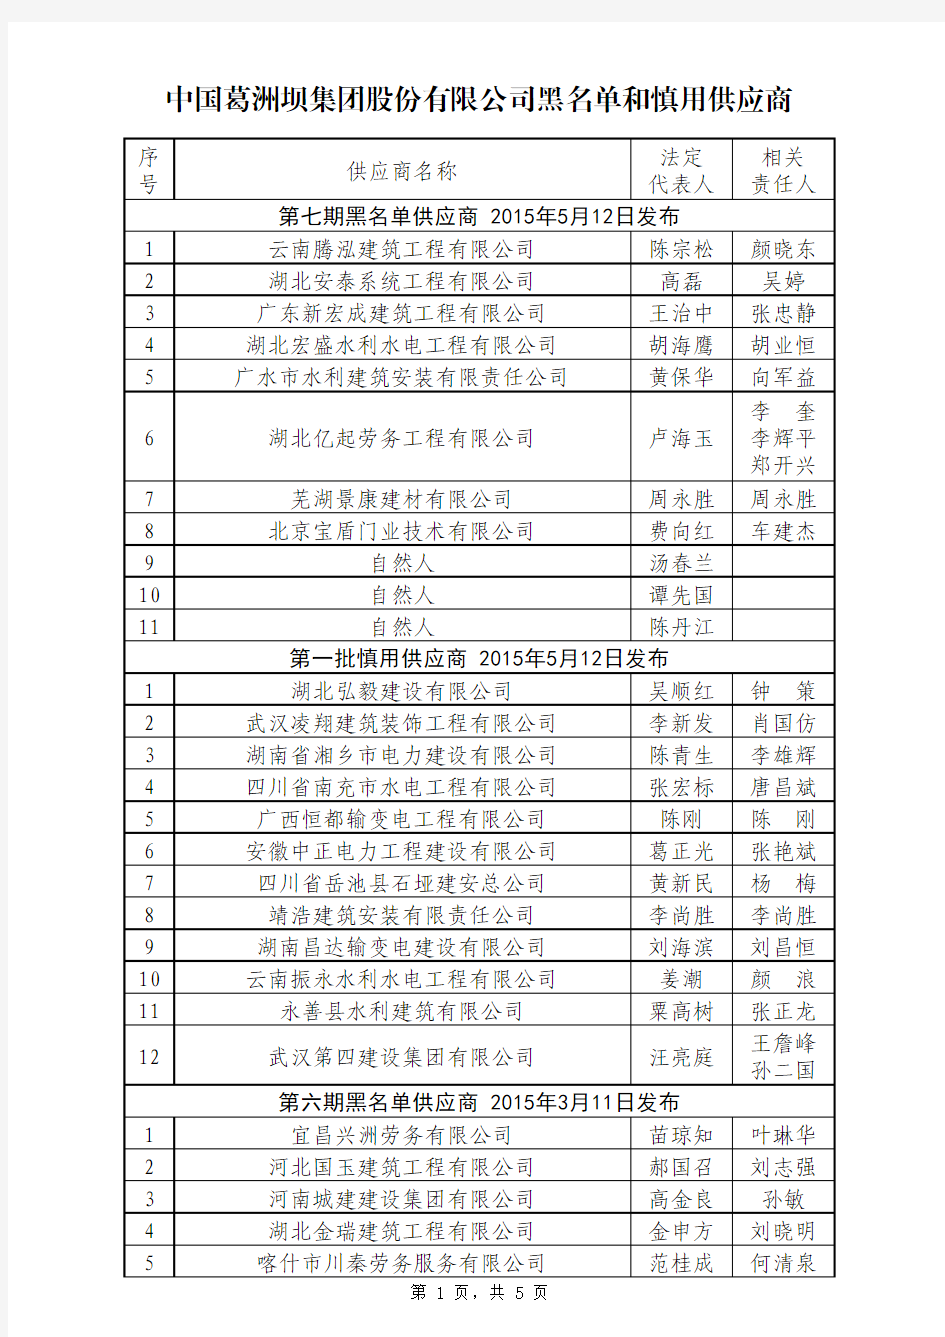 中国葛洲坝集团股份有限公司黑名单和慎用供应商